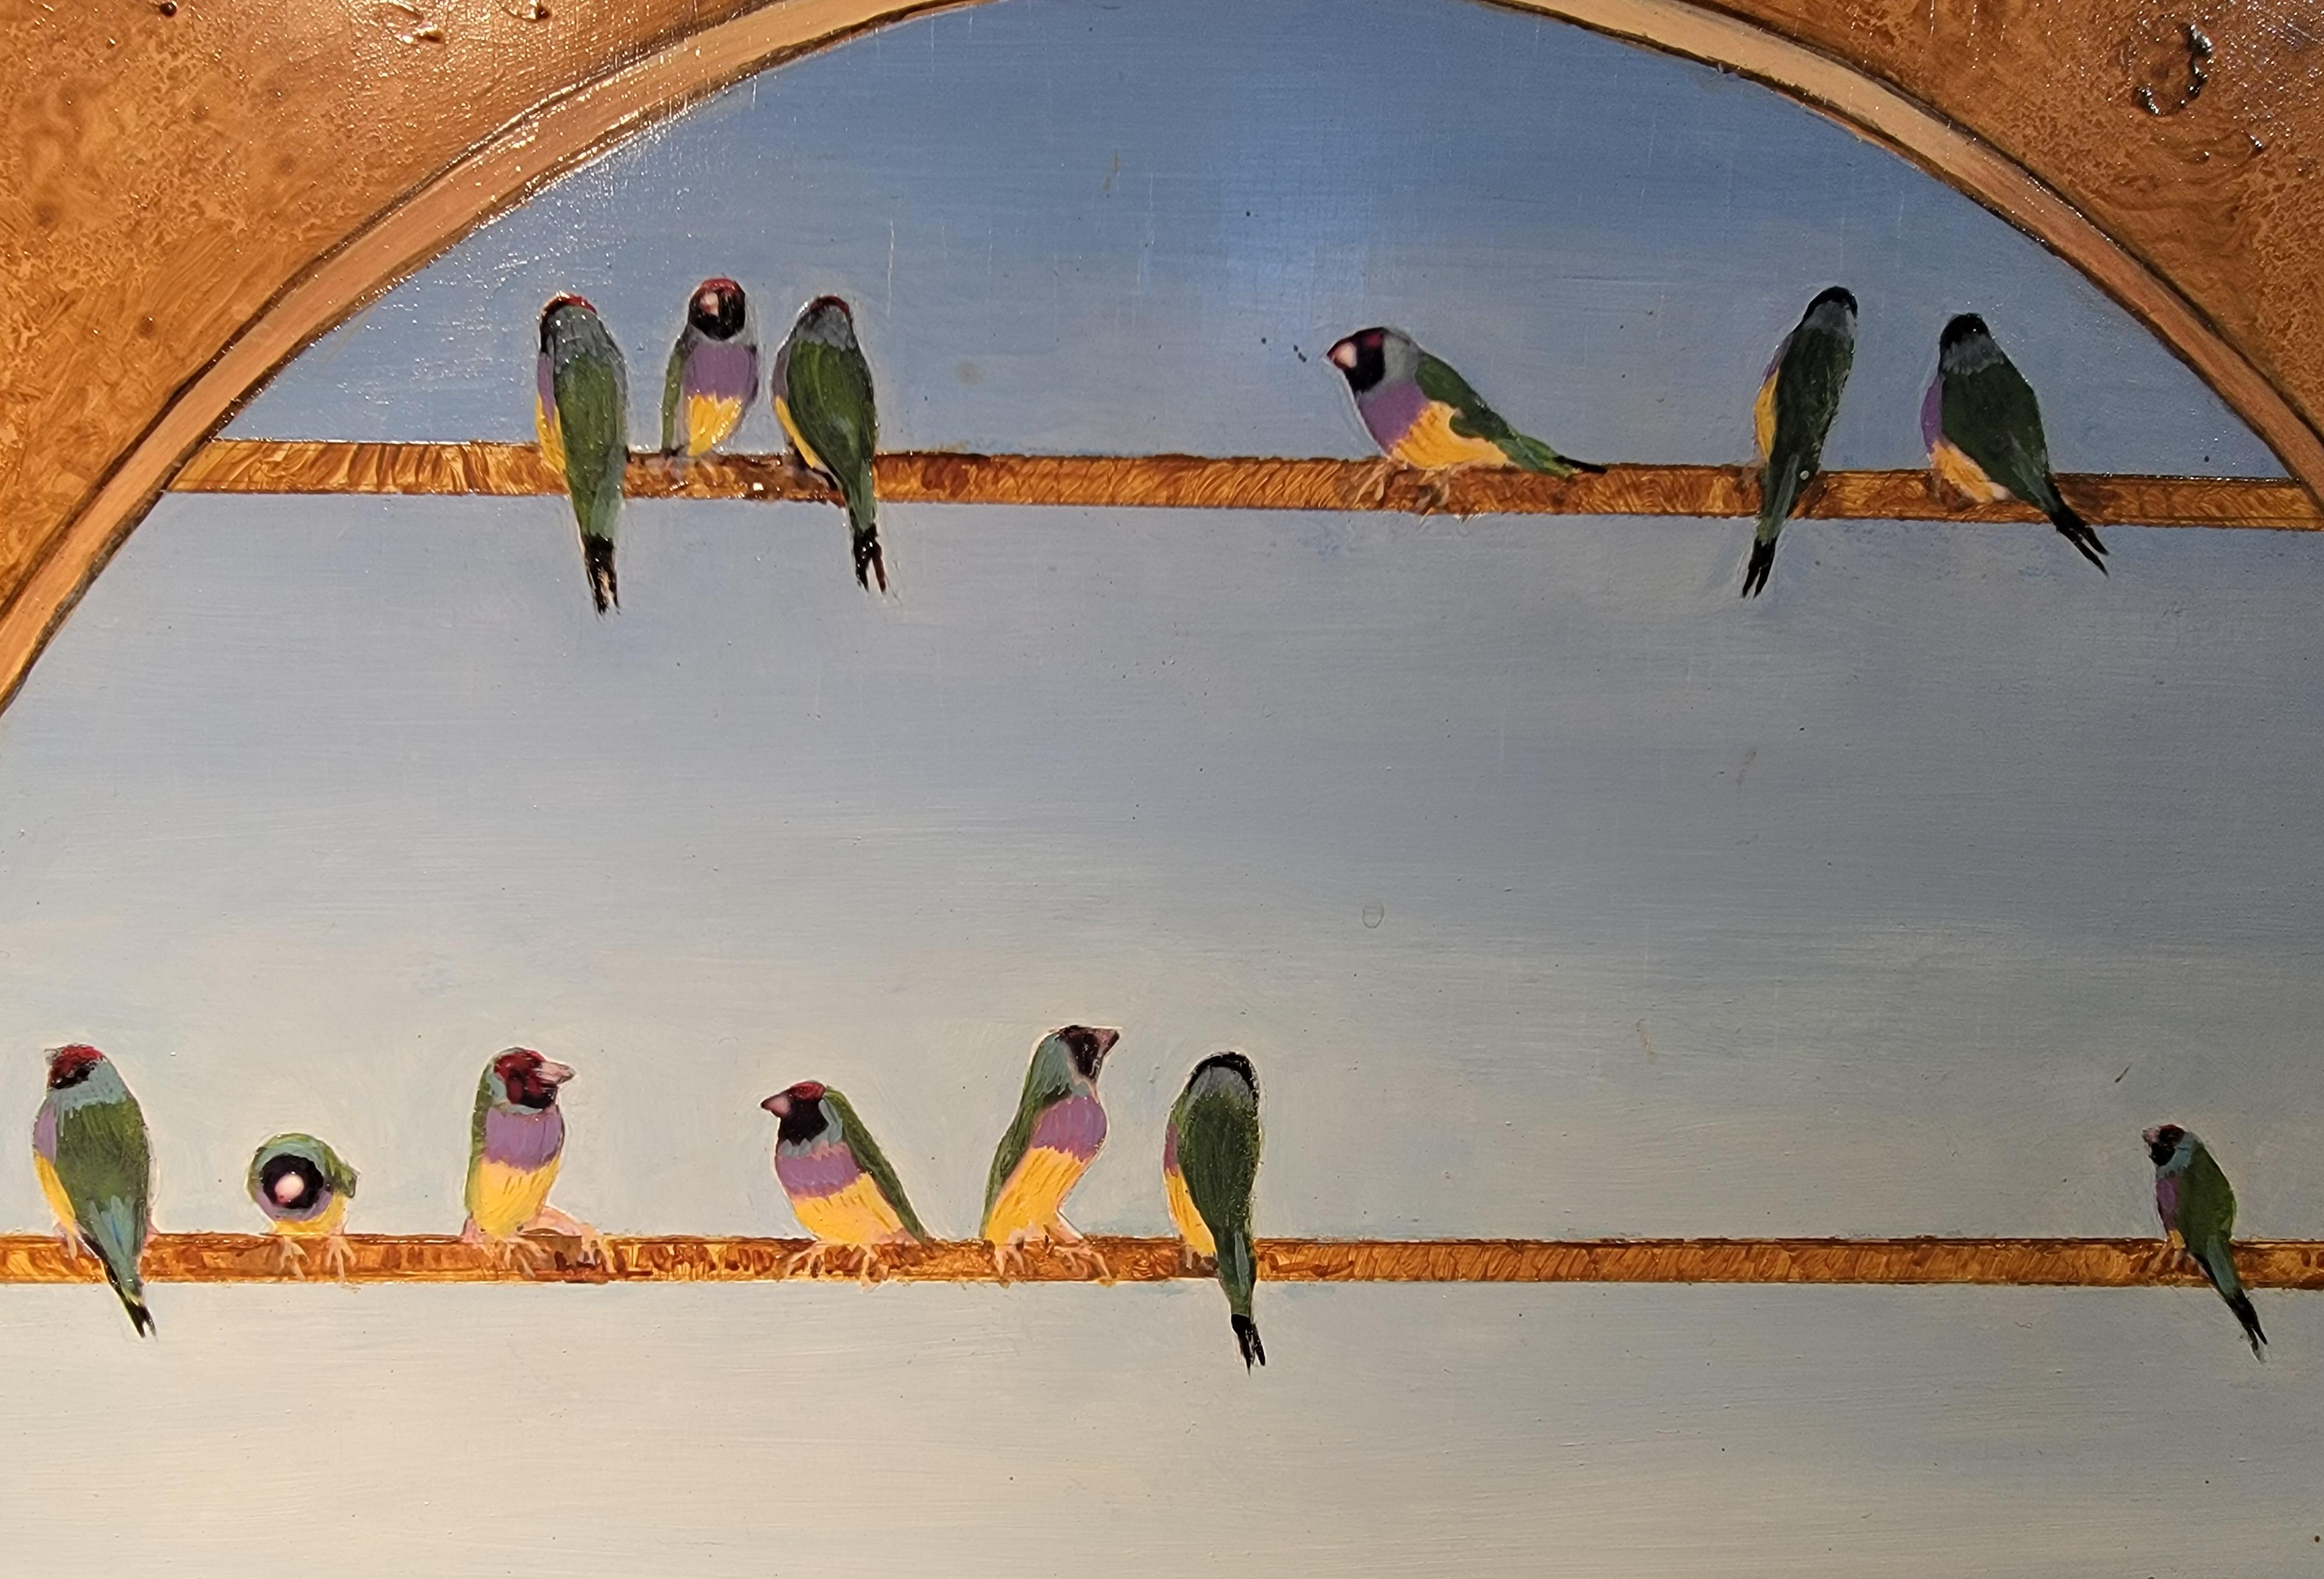 Une peinture surréaliste de Millicent Tomkins, réalisée à l'aide de techniques mixtes. Figure féminine avec des oiseaux. Magnifiquement encadré dans le cadre original et créatif en bois massif.

Millicent Tomkins

Millicent est née à San Francisco